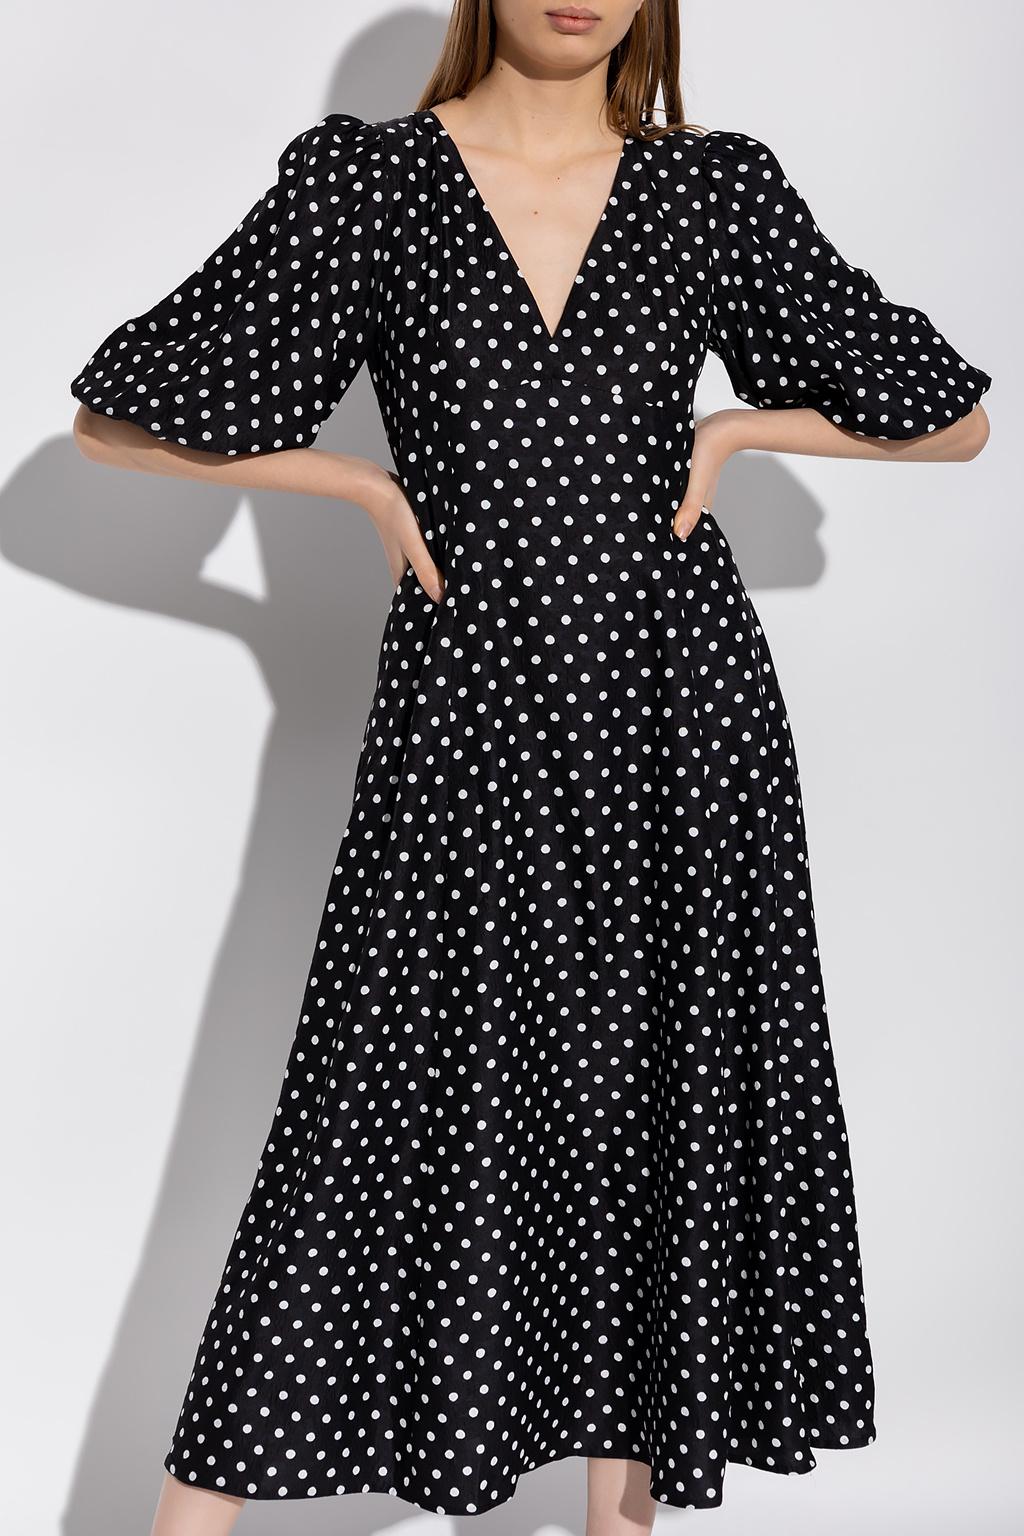 Kate Spade Polka Dot Dress in Black | Lyst